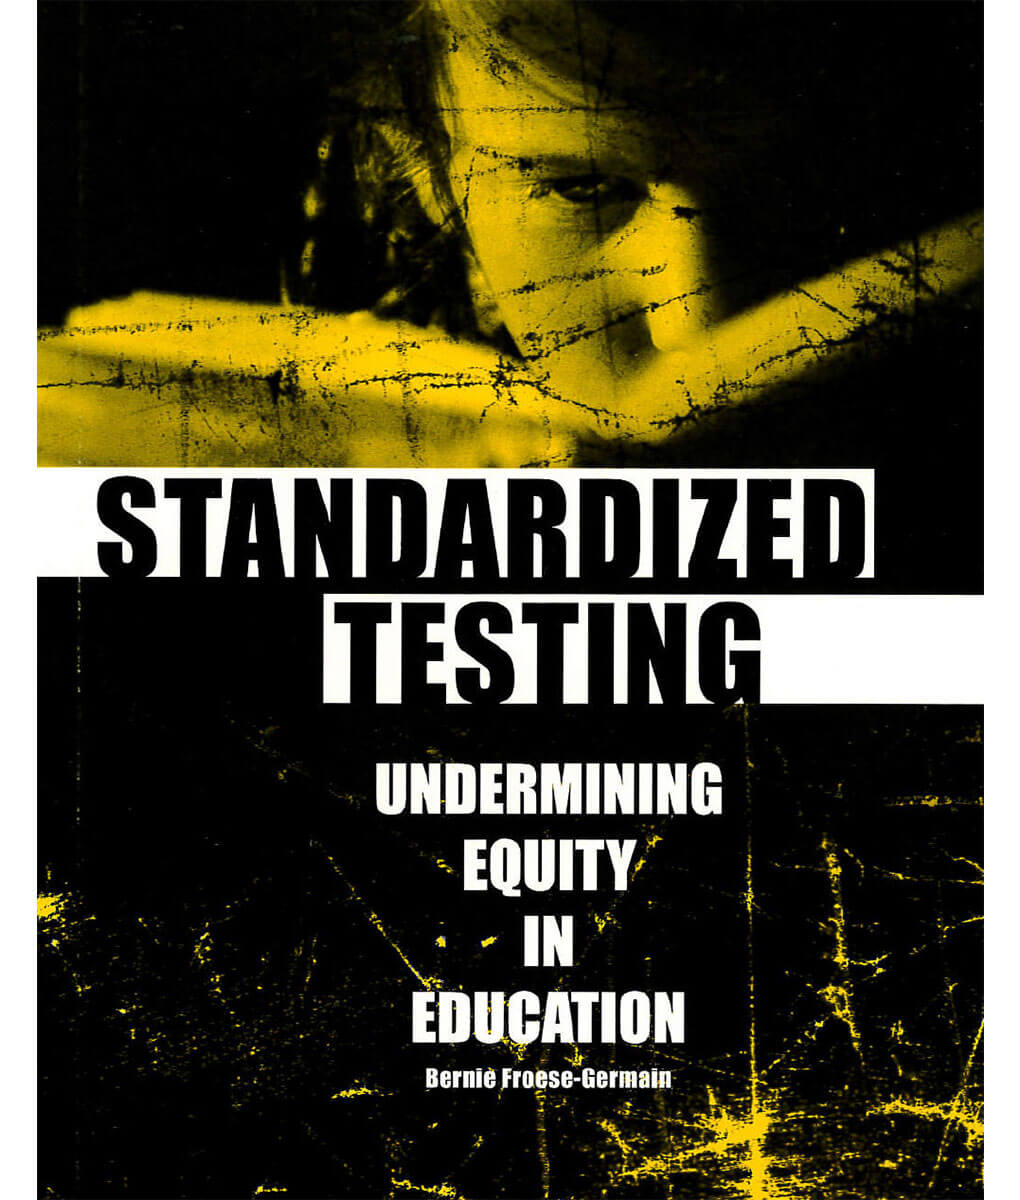 Les tests standardisés : atteinte à l’équité en éducation